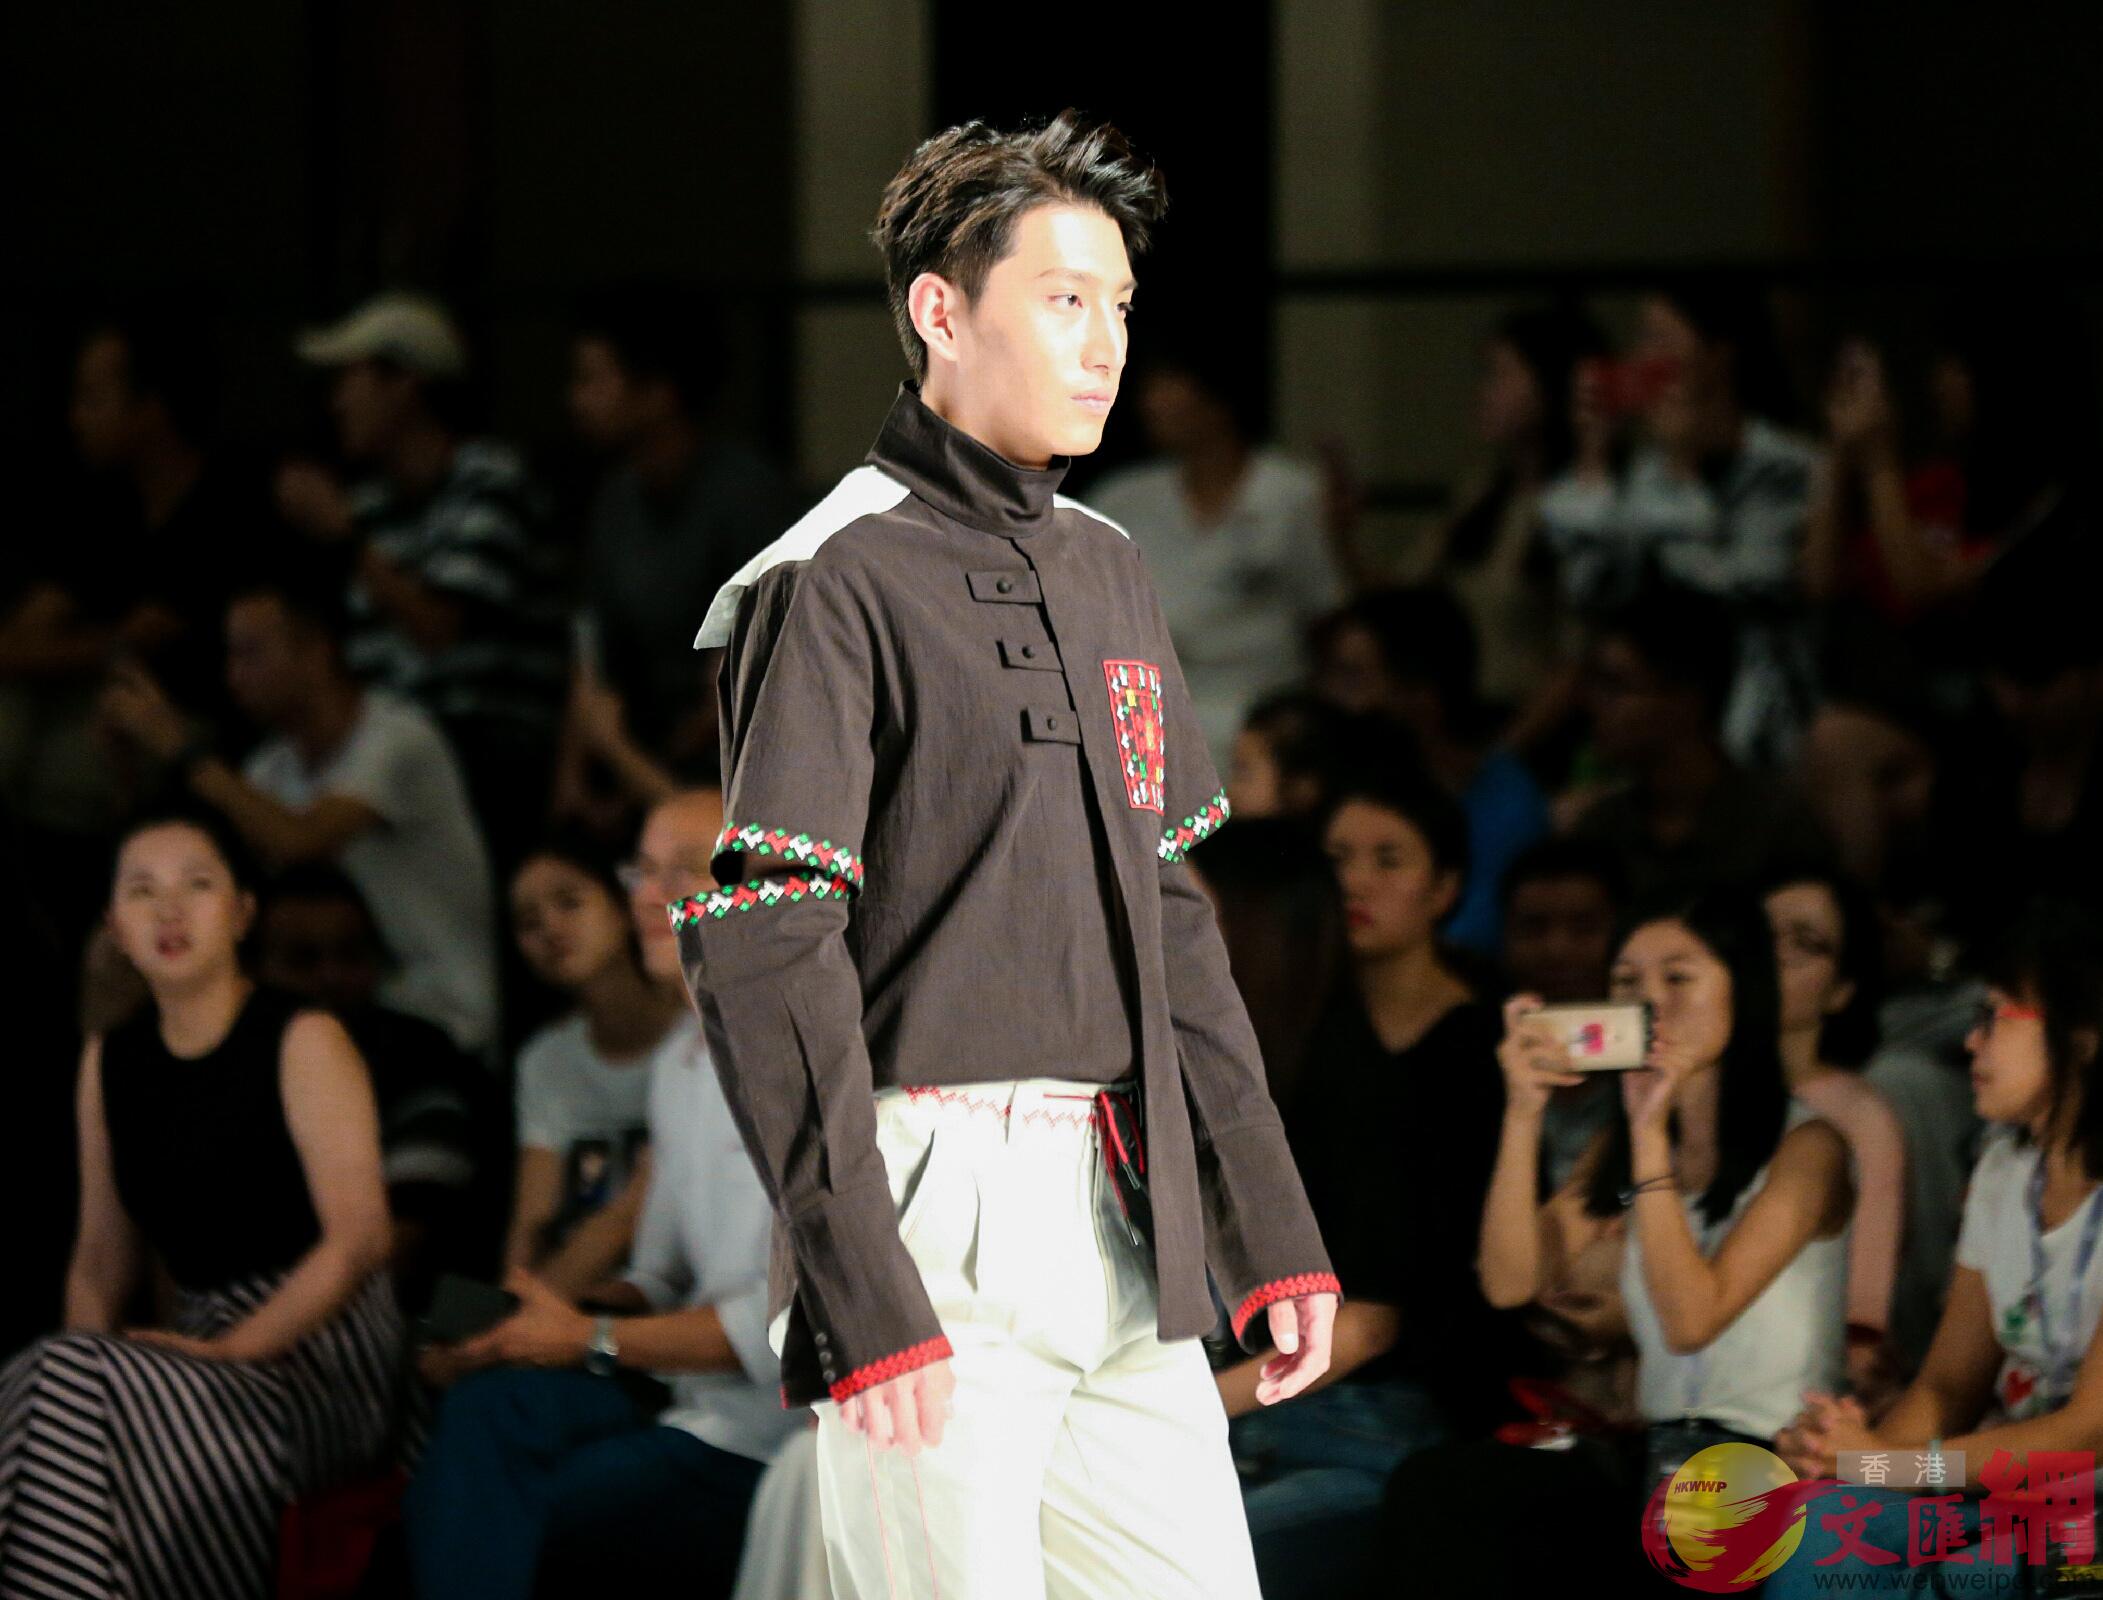 廣東服裝行業也吸引越來越多香港等境外設計師B買手前來發展C(記者 方俊明 攝)